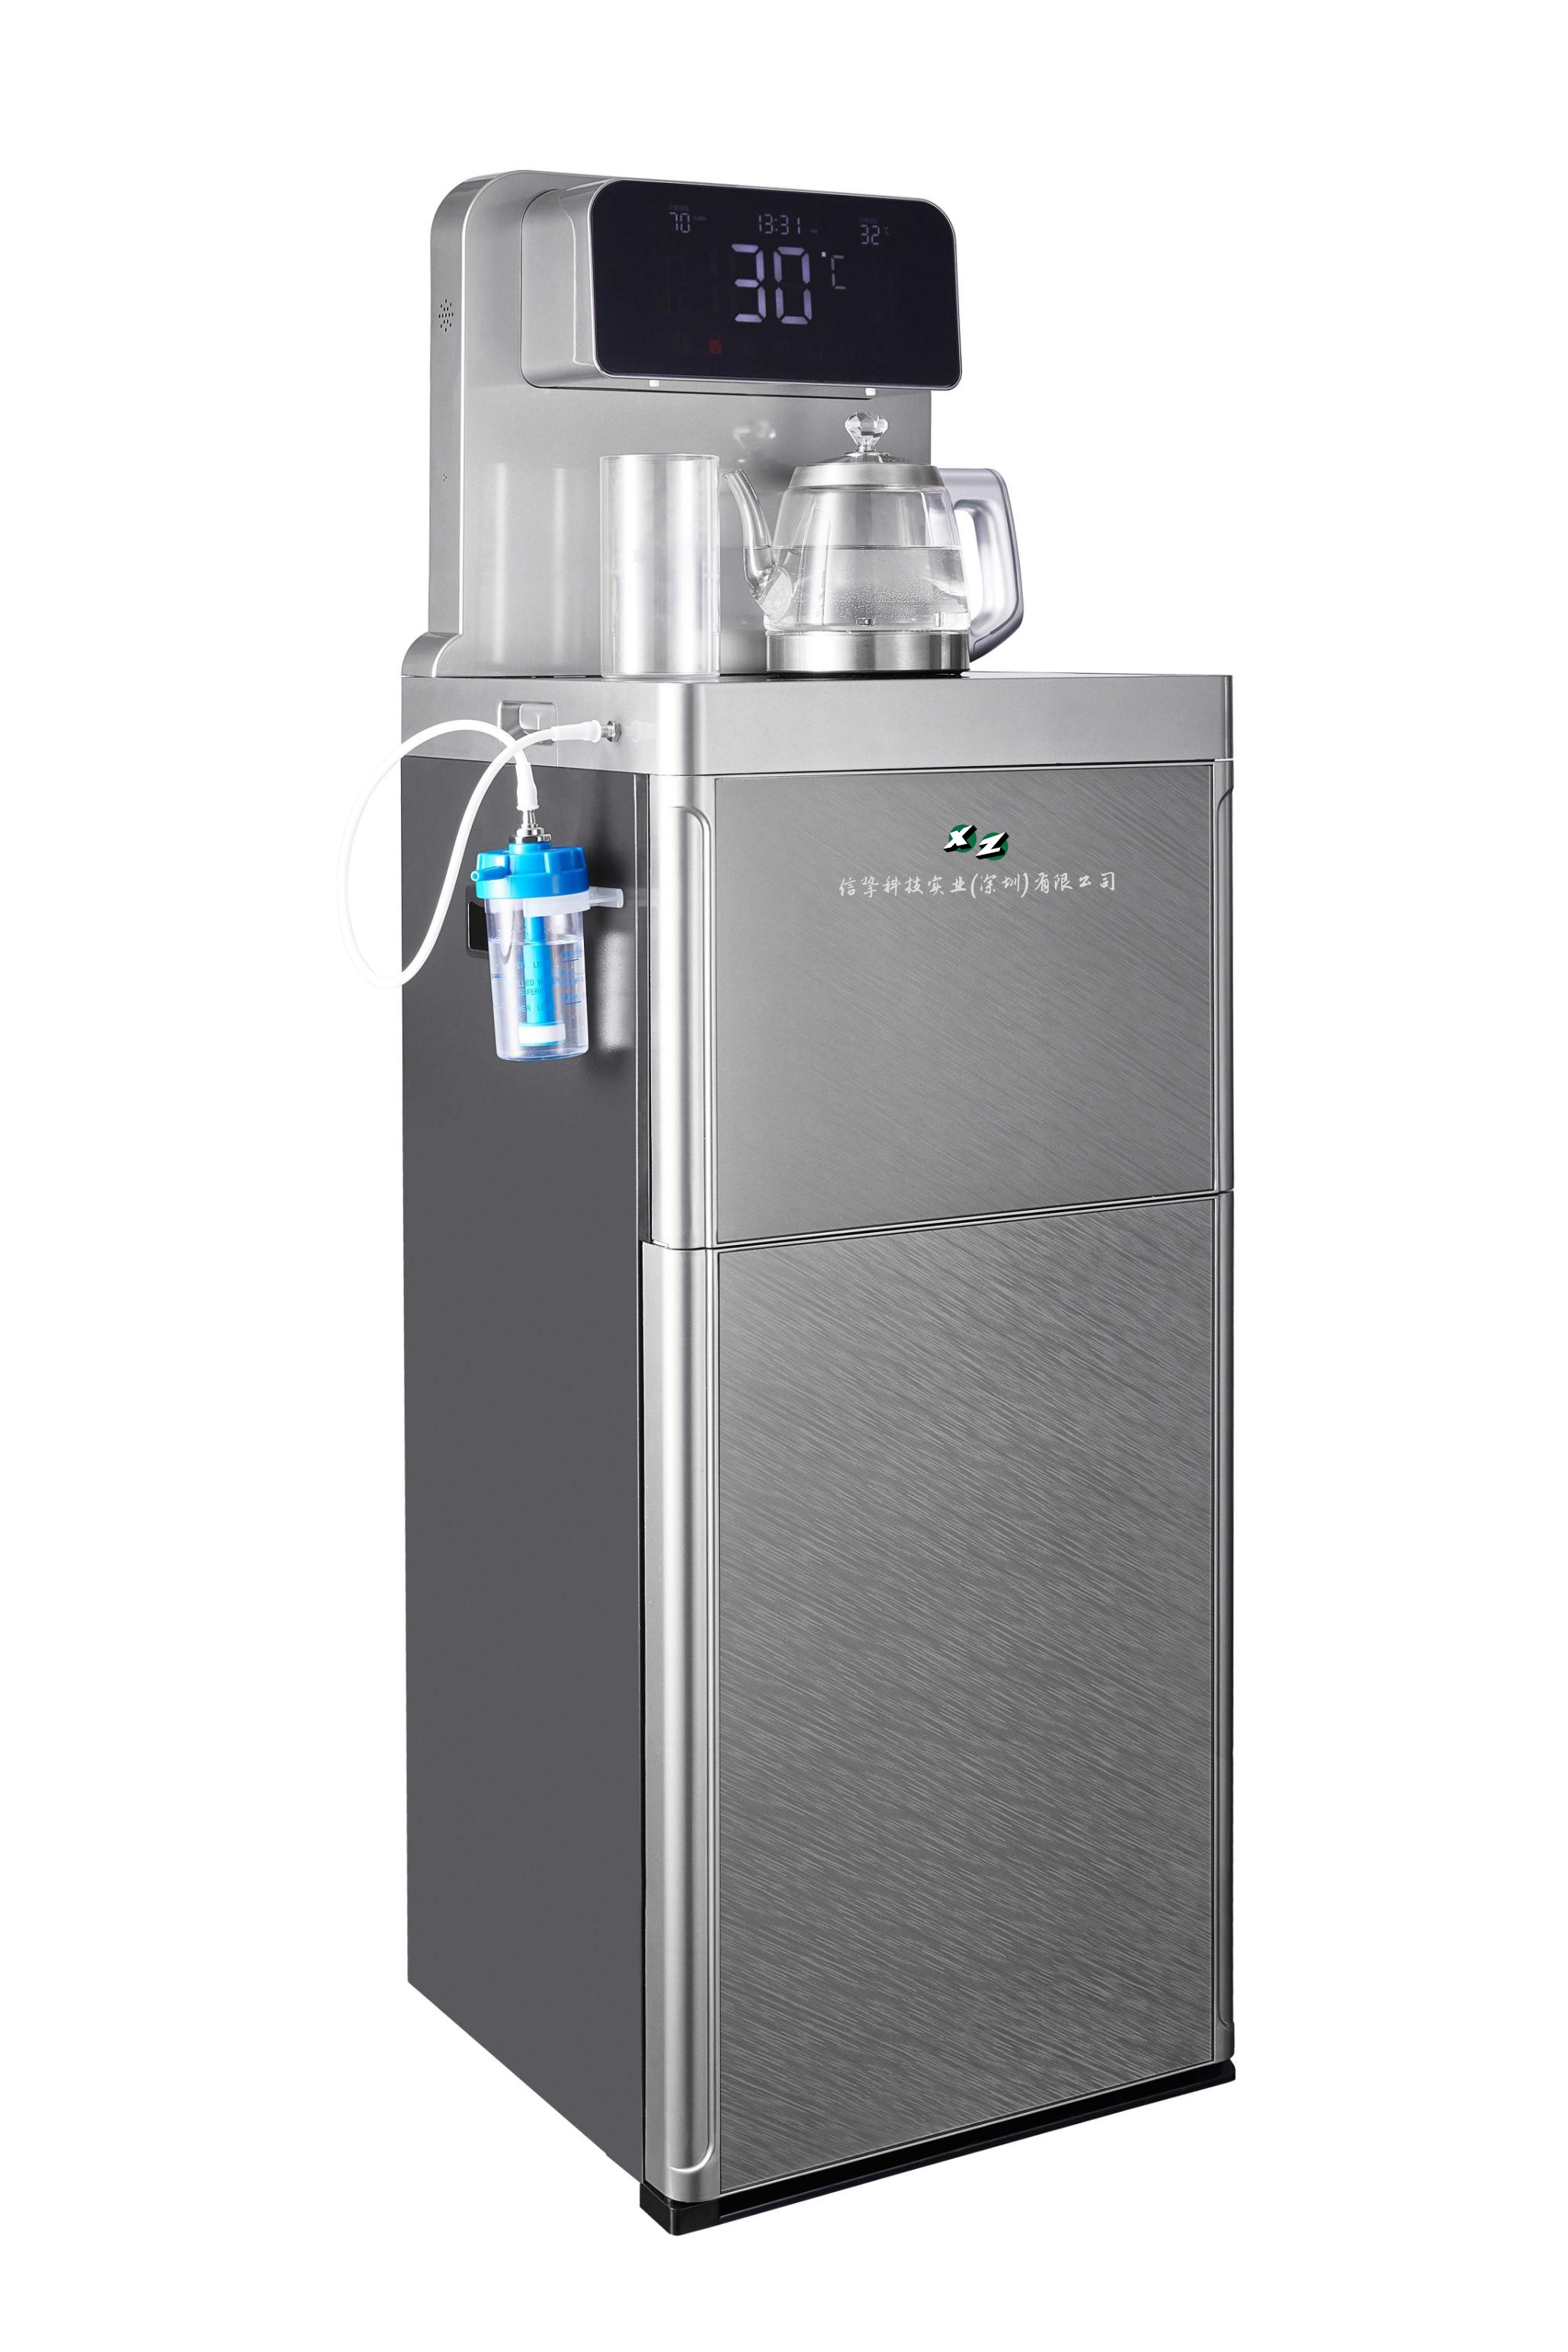 信挚纳米气泡氢水机2.5ppm高浓度氢水机台上式氢饮机即热饮水机多功能氢 